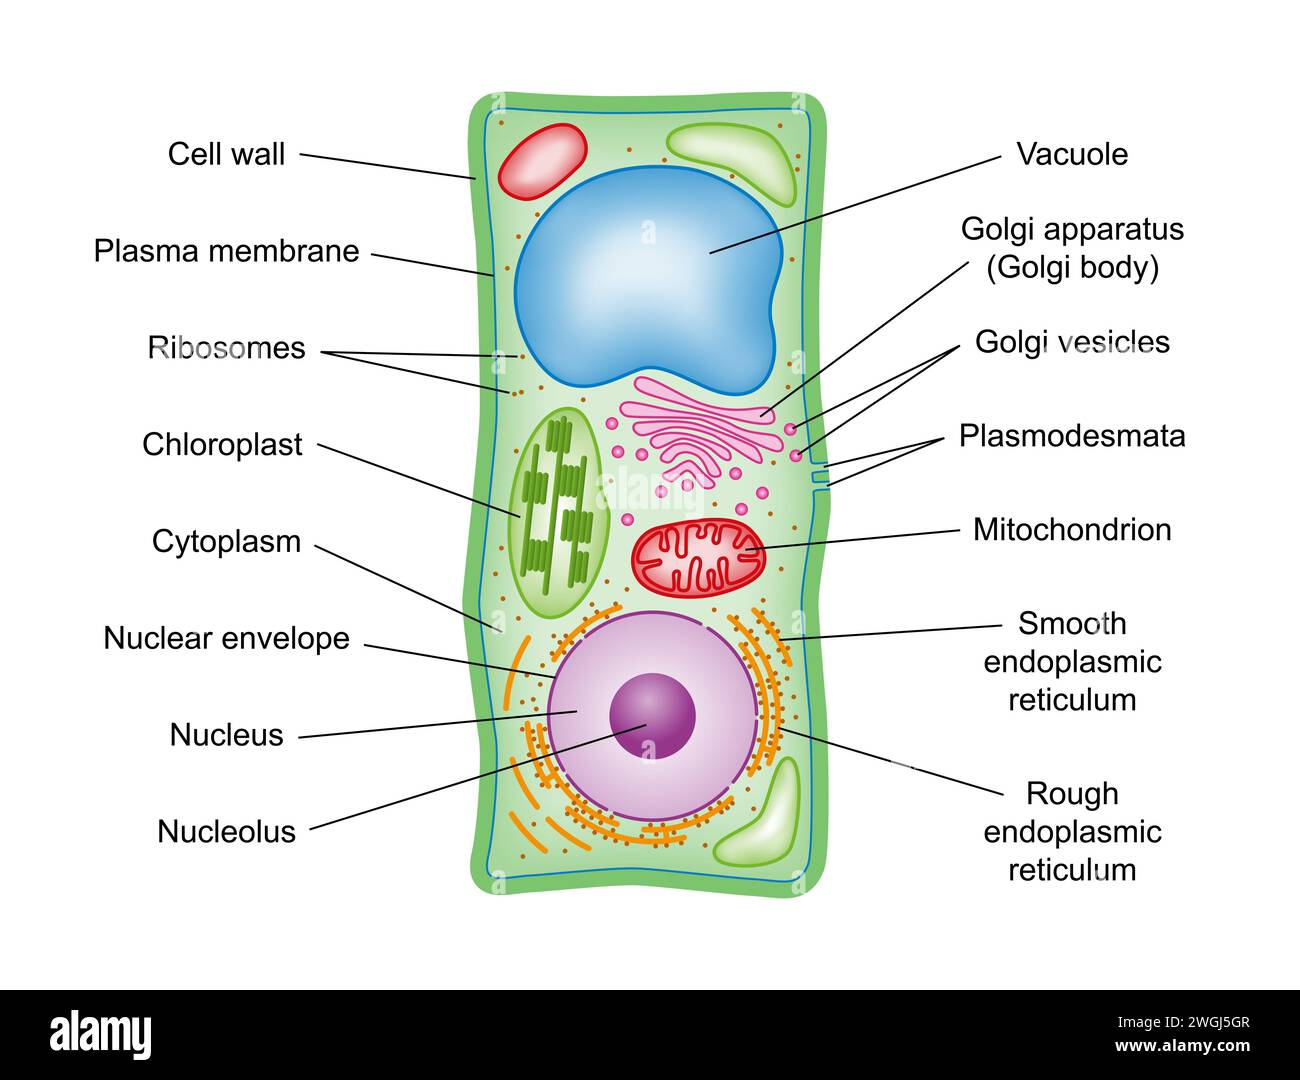 Struttura cellulare impianto, sezione trasversale, con legenda. Diagramma schematico dei componenti delle cellule vegetali, eucarioti fotosintetici, con termini tecnici . Foto Stock